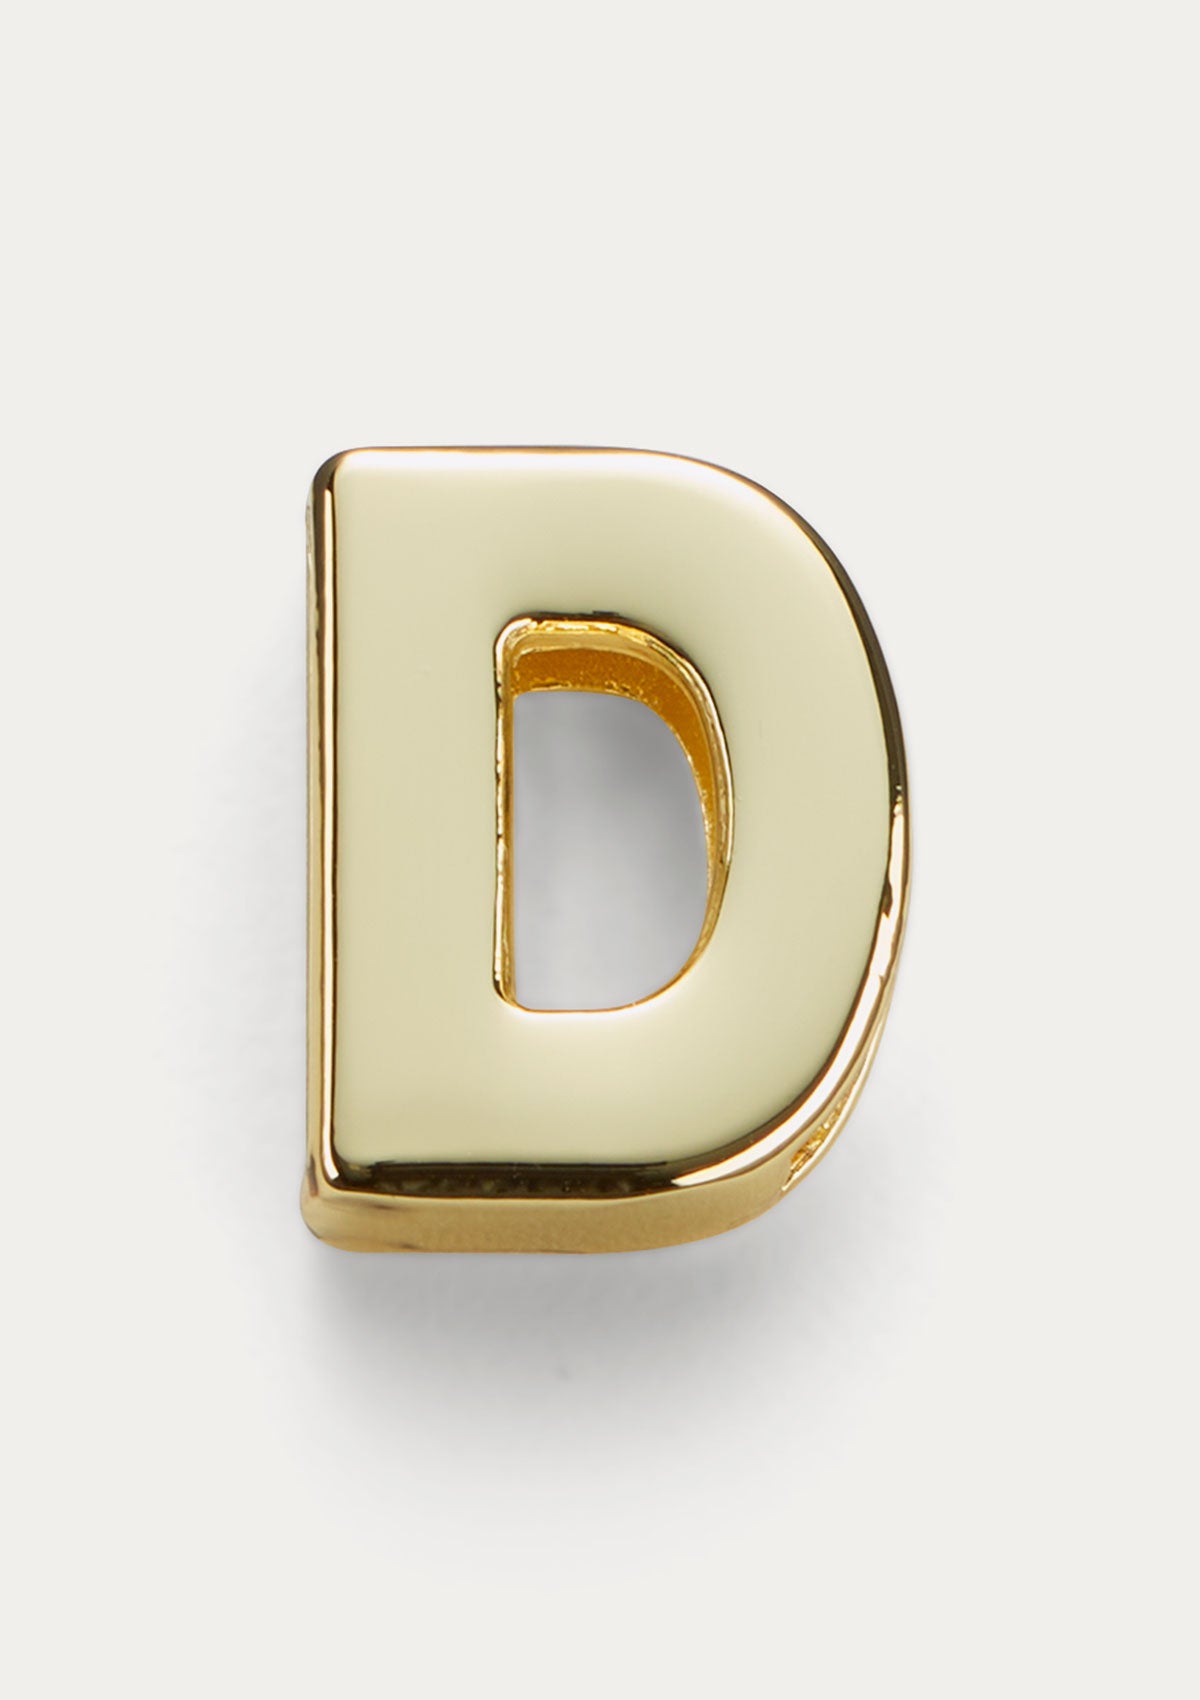 Vista frontale del Charm Untags Lettera D, in metallo dorato, per Phone Strap Personalizzabile